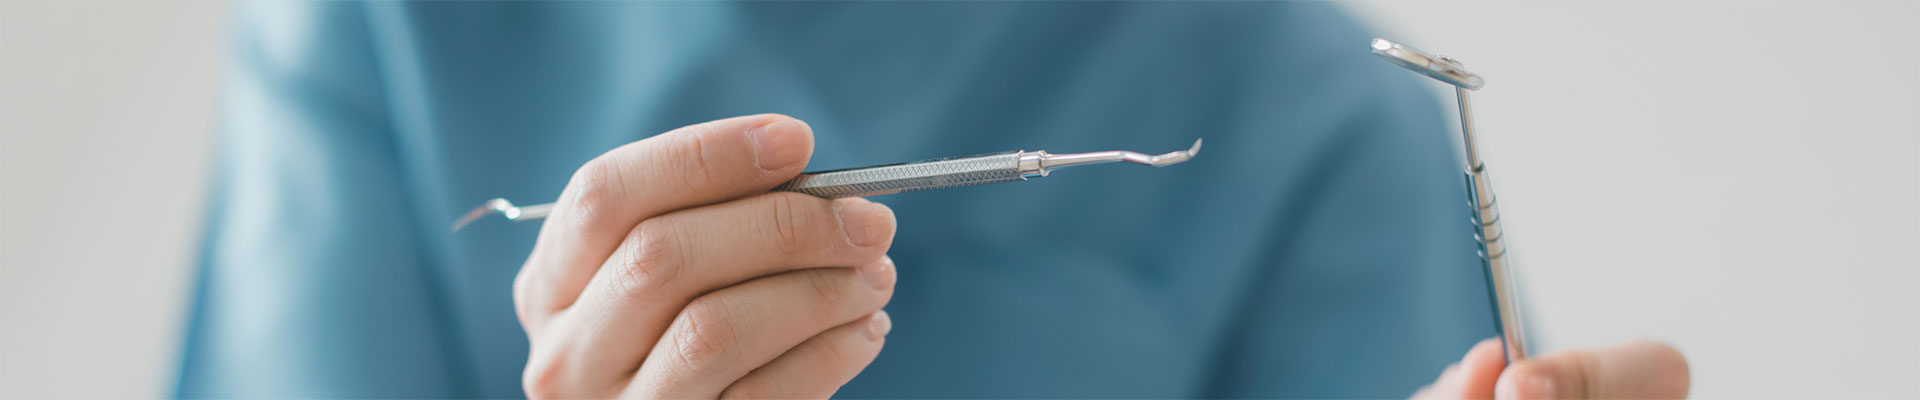 歯科用器具は汚いの？なぜ使いまわしが問題なの？感染経路としての口腔